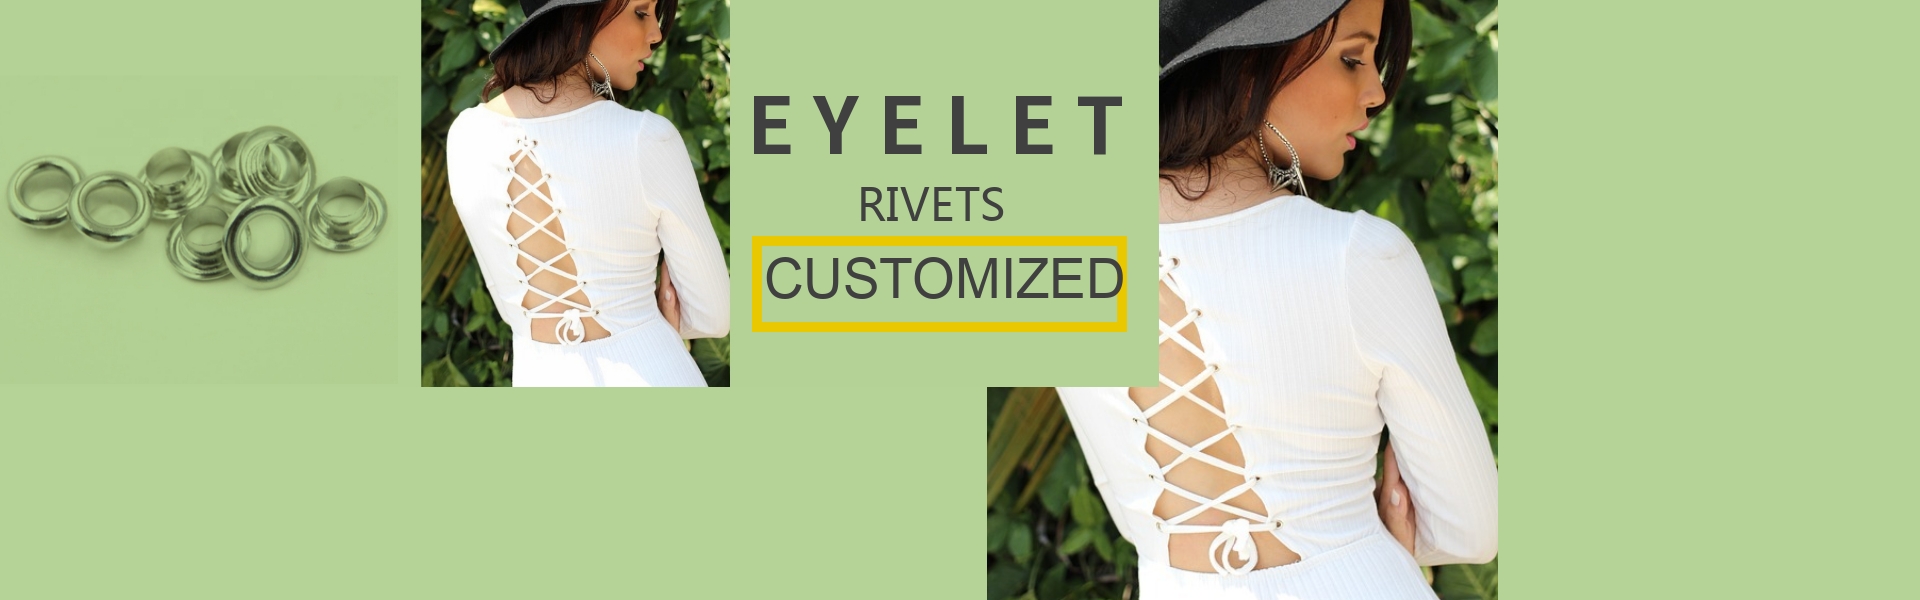 EYELET RIVET, CLOTHING EYELET